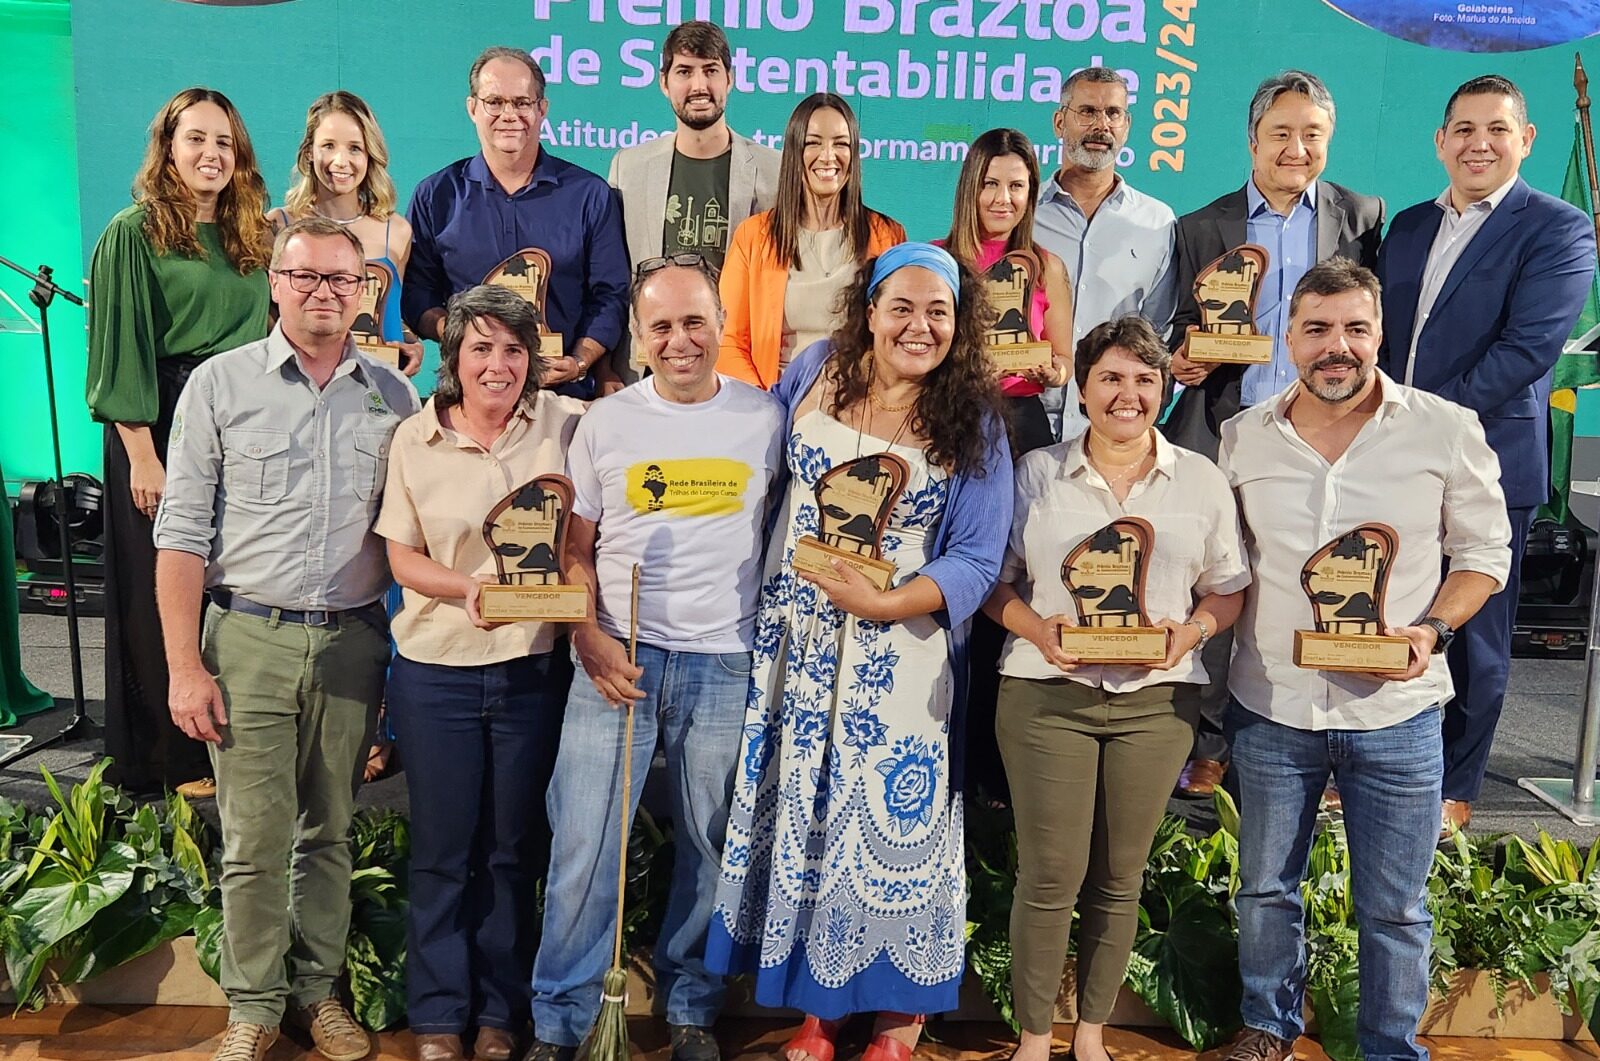 Vencedores Premio Braztoa de Sustentabilidade 2023 24 divulgacao 1 e1714481430402 Braztoa abre inscrições para o Prêmio Braztoa de Sustentabilidade 2024